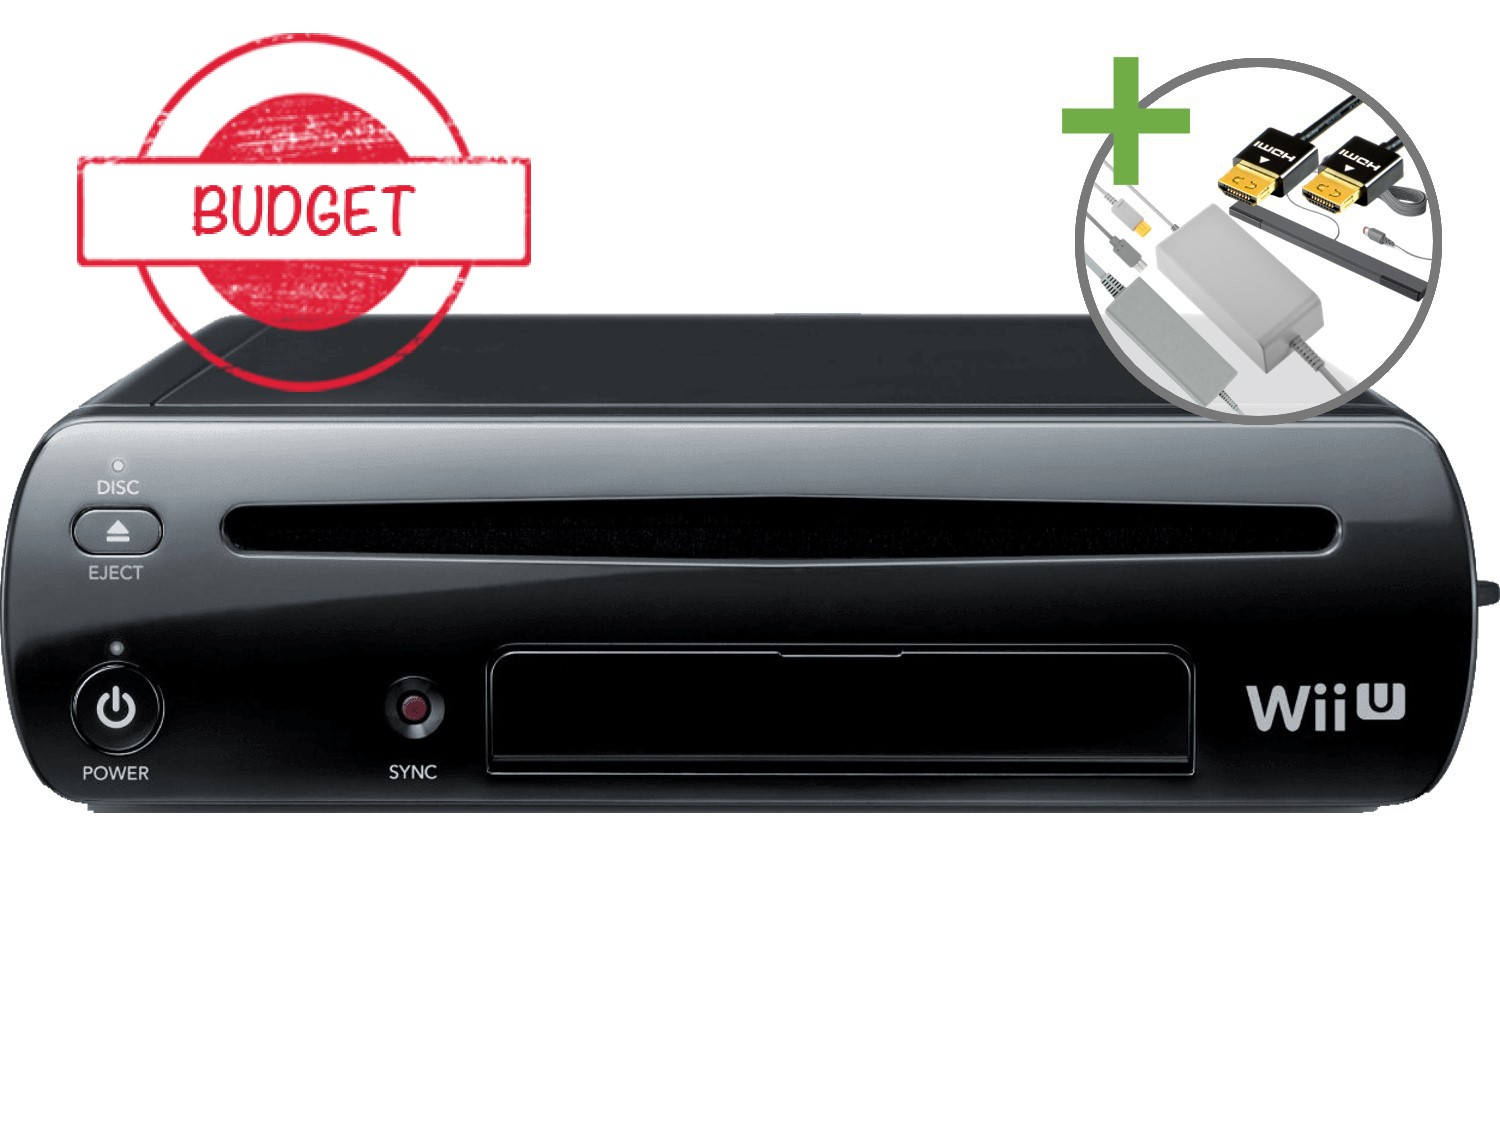 Nintendo Wii U Starter Pack - Basic Black Pack Edition - Budget - Wii U Hardware - 3